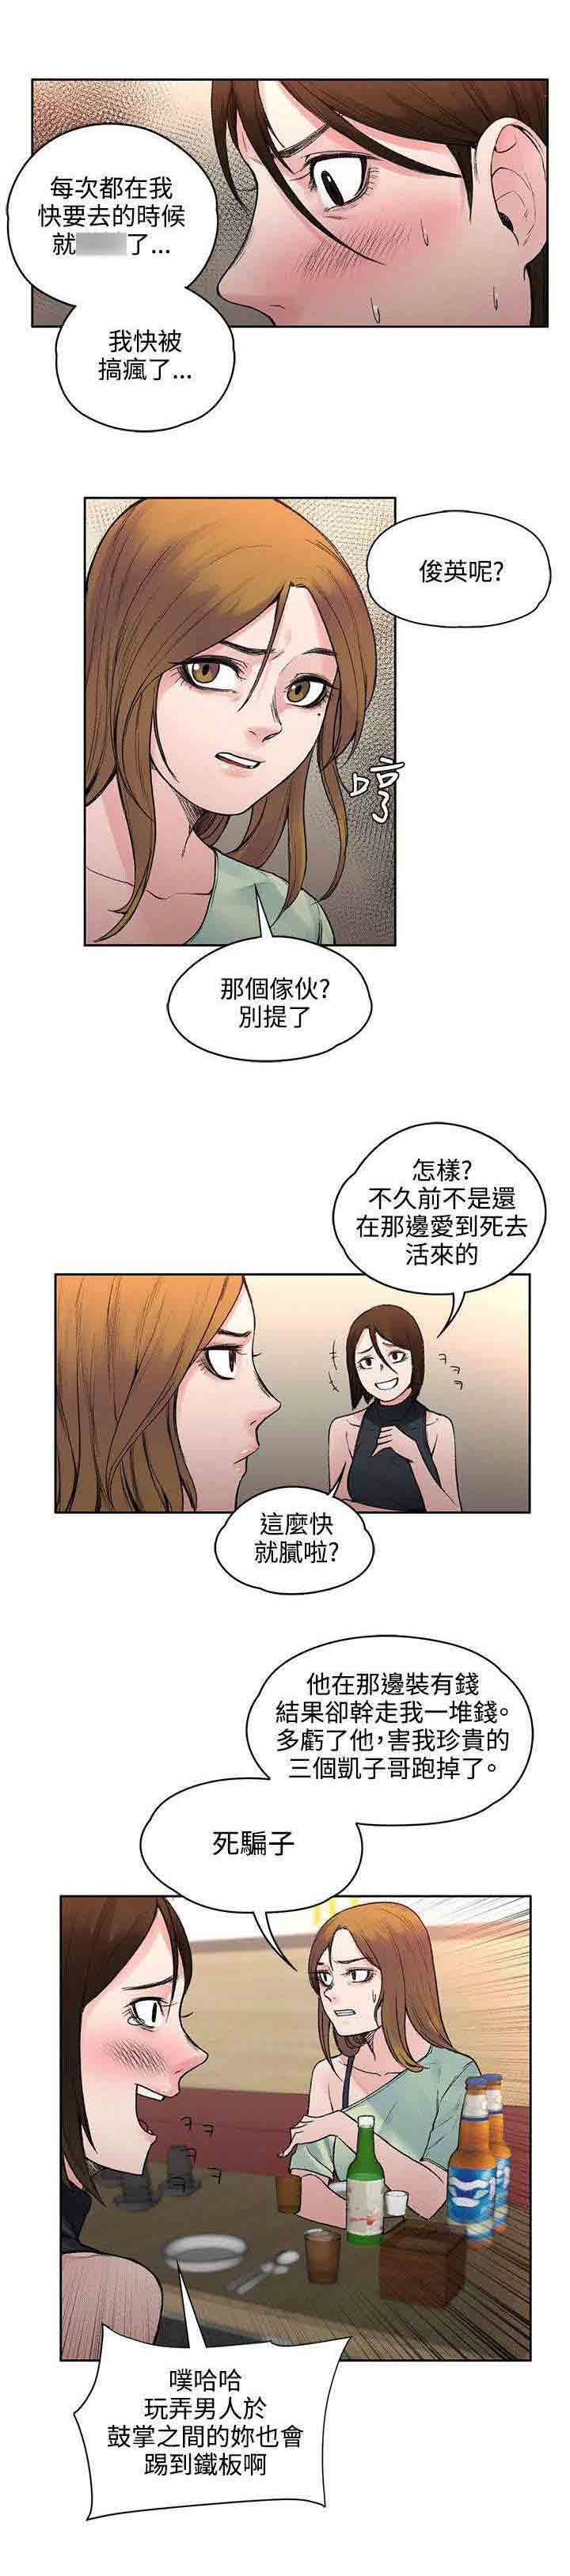 韩国污漫画 甜蜜的香氣 第38话去哪能见到 5